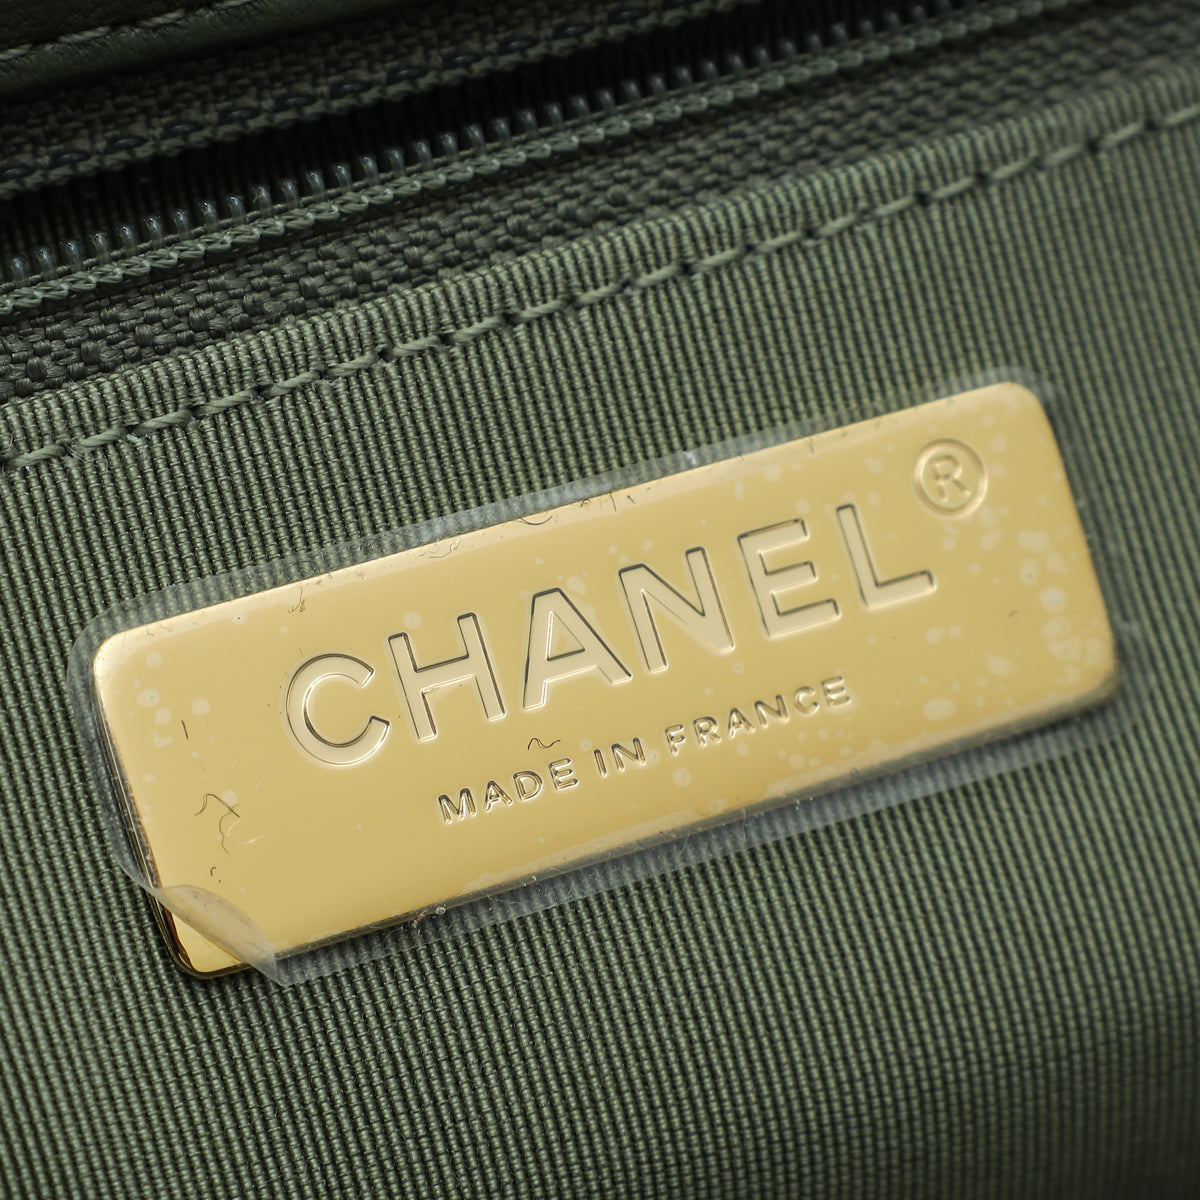 Chanel Light Moss Green 19 Maxi Flap Bag